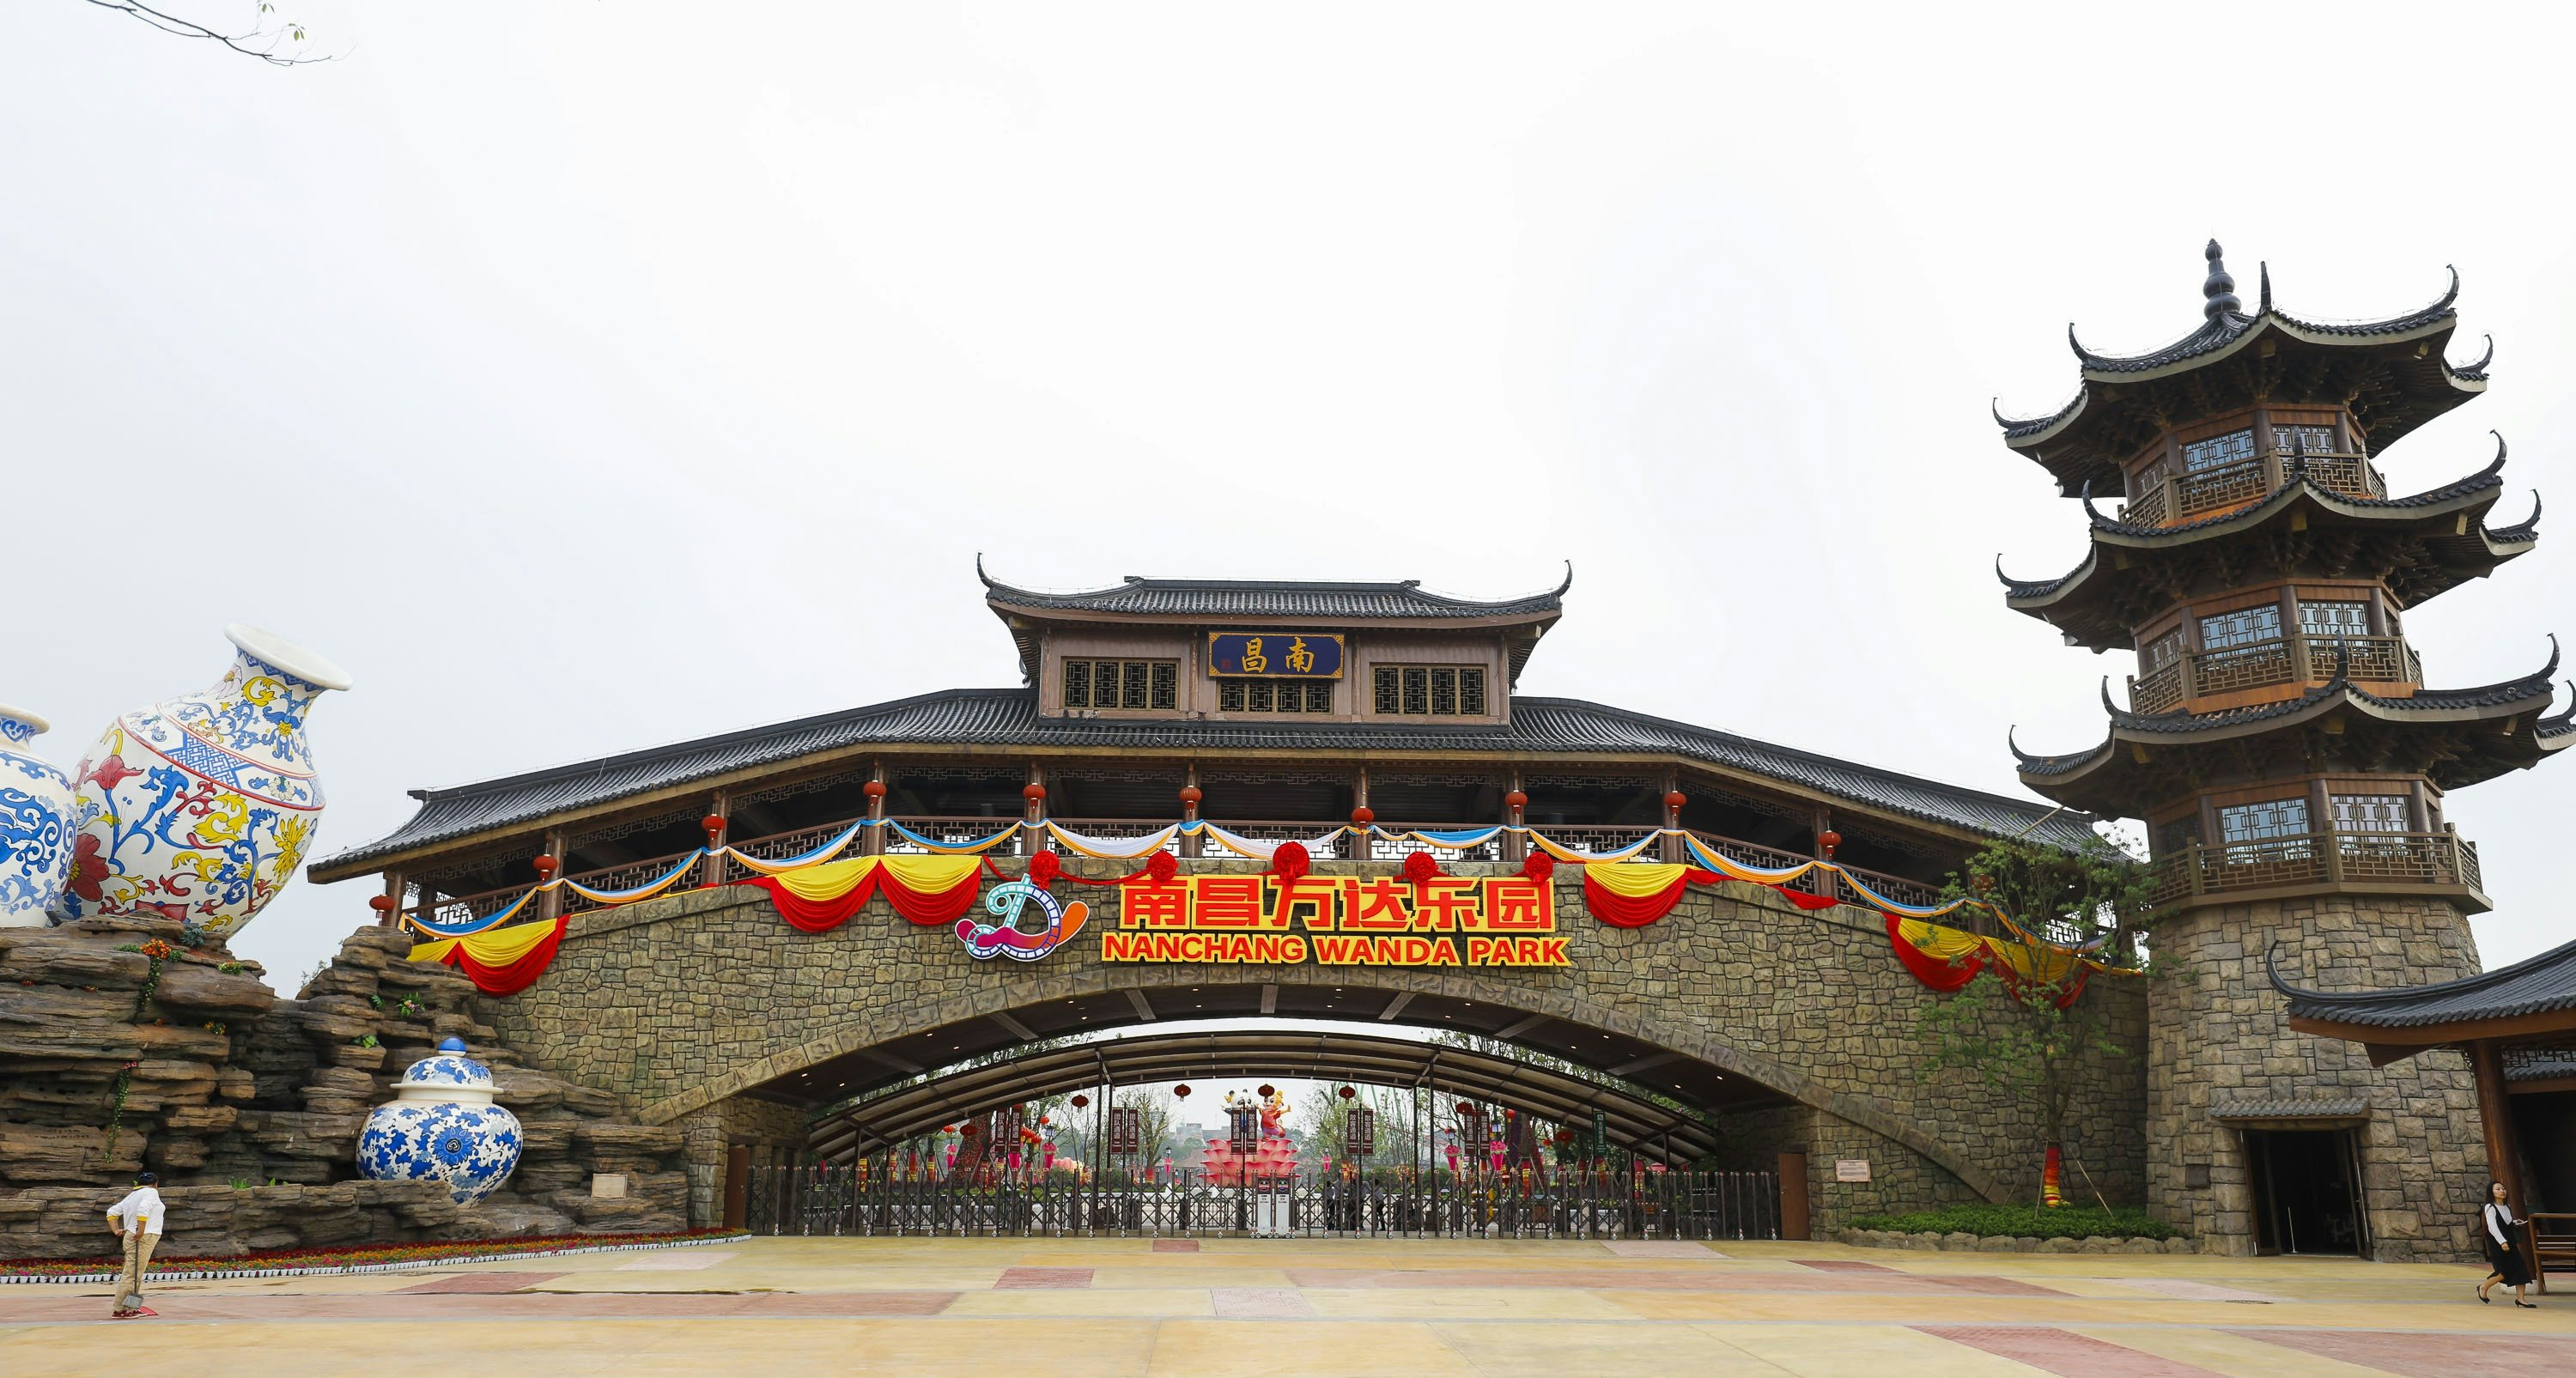 Wanda park in Nanchang, Jiang Xi. Photo: Humphery/Shutterstock.com